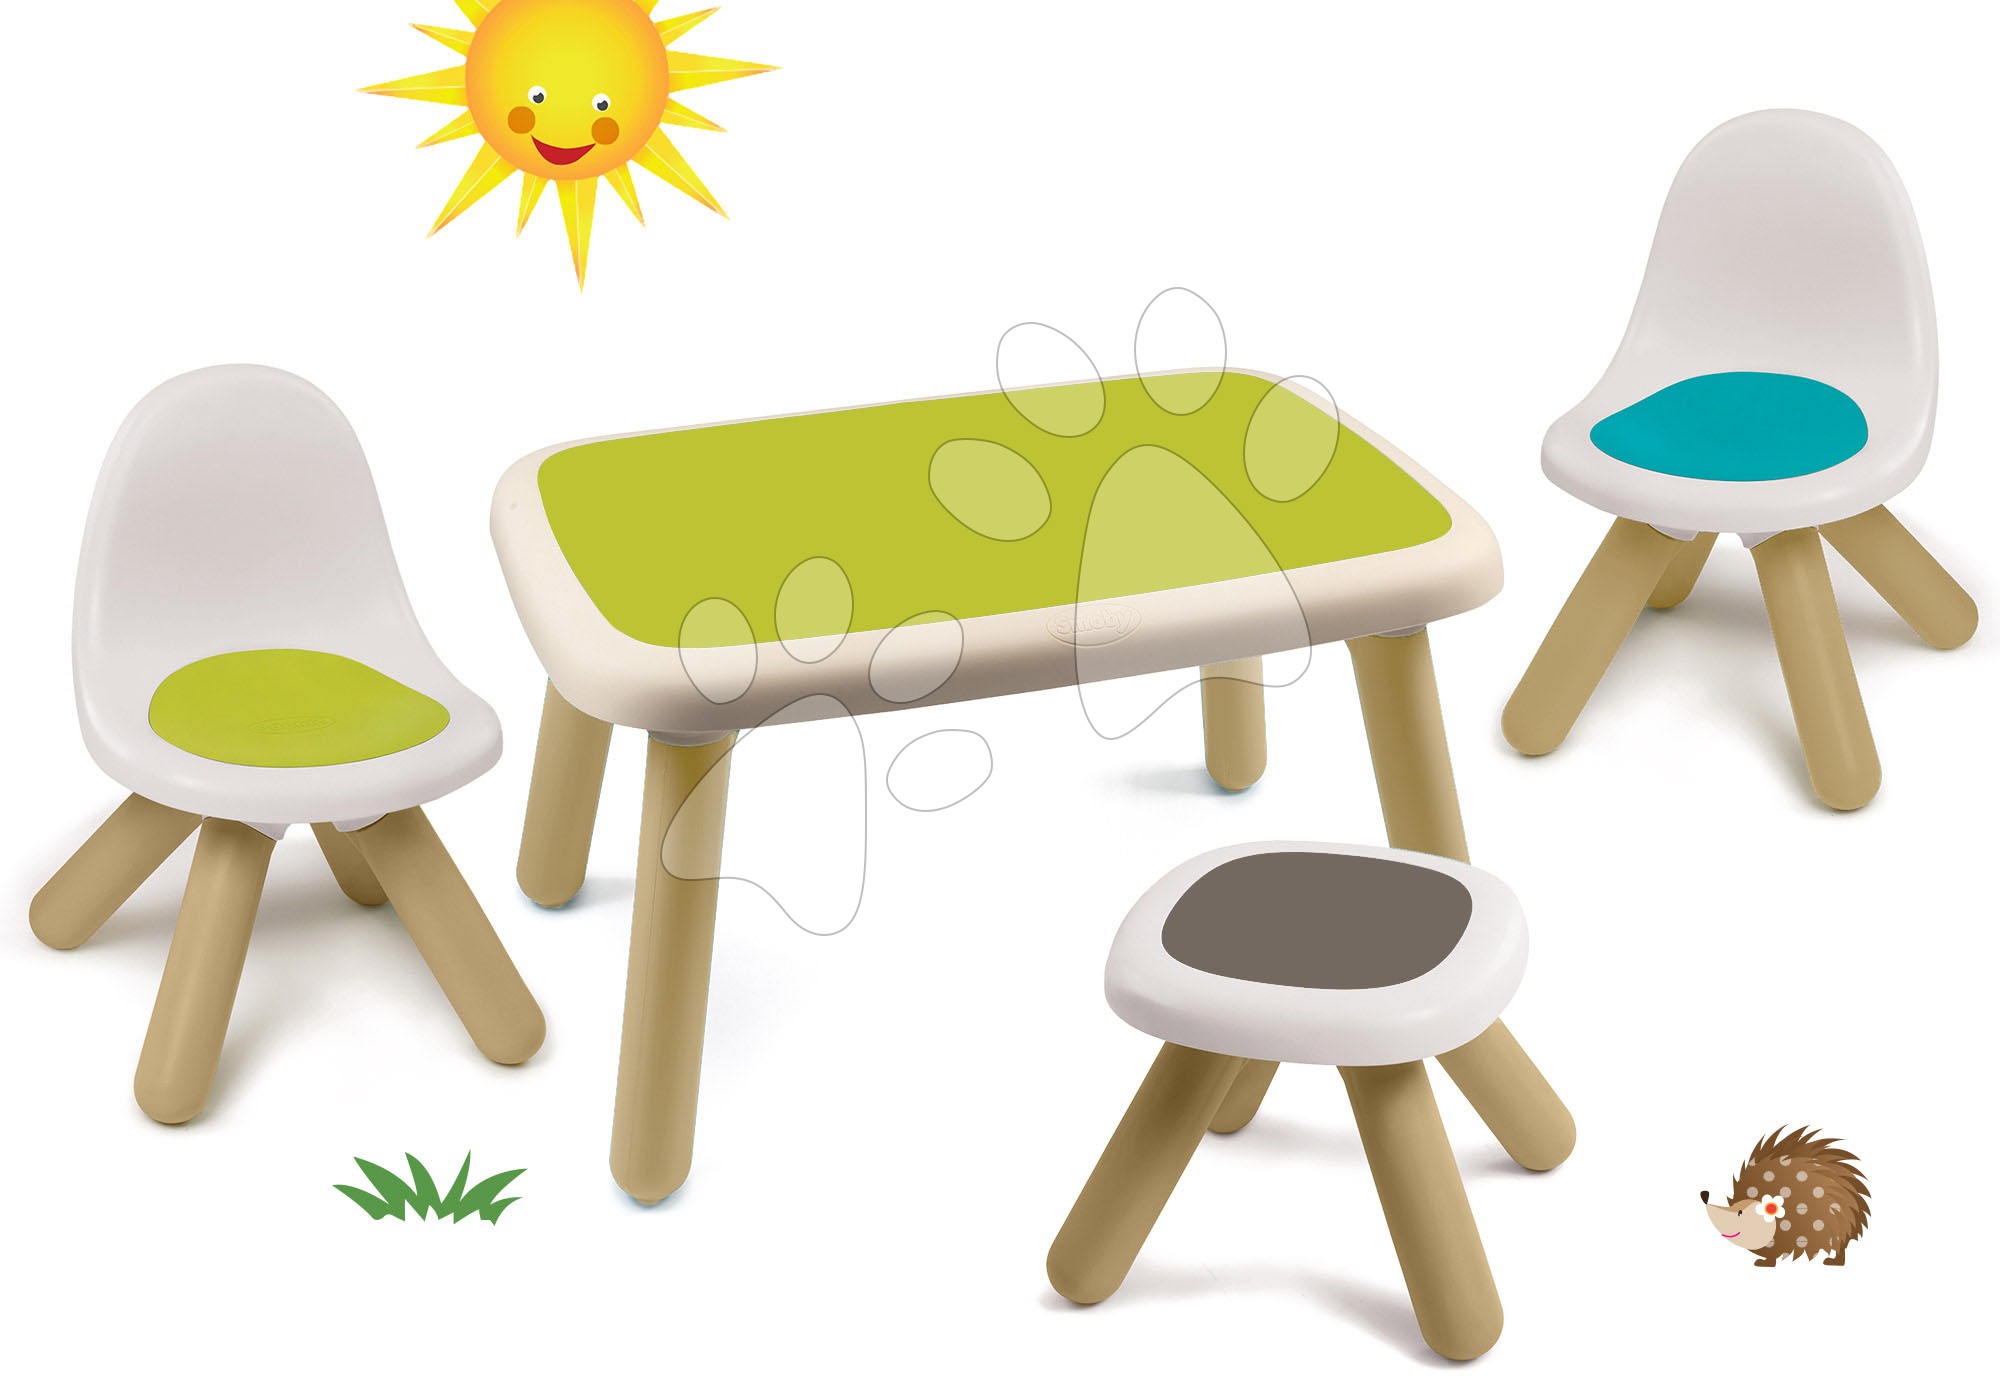 Dětský záhradní nábytek sety - Set stůl pro děti KidTable zelený Smoby se dvěma židlemi a stolkem s UV filtrem